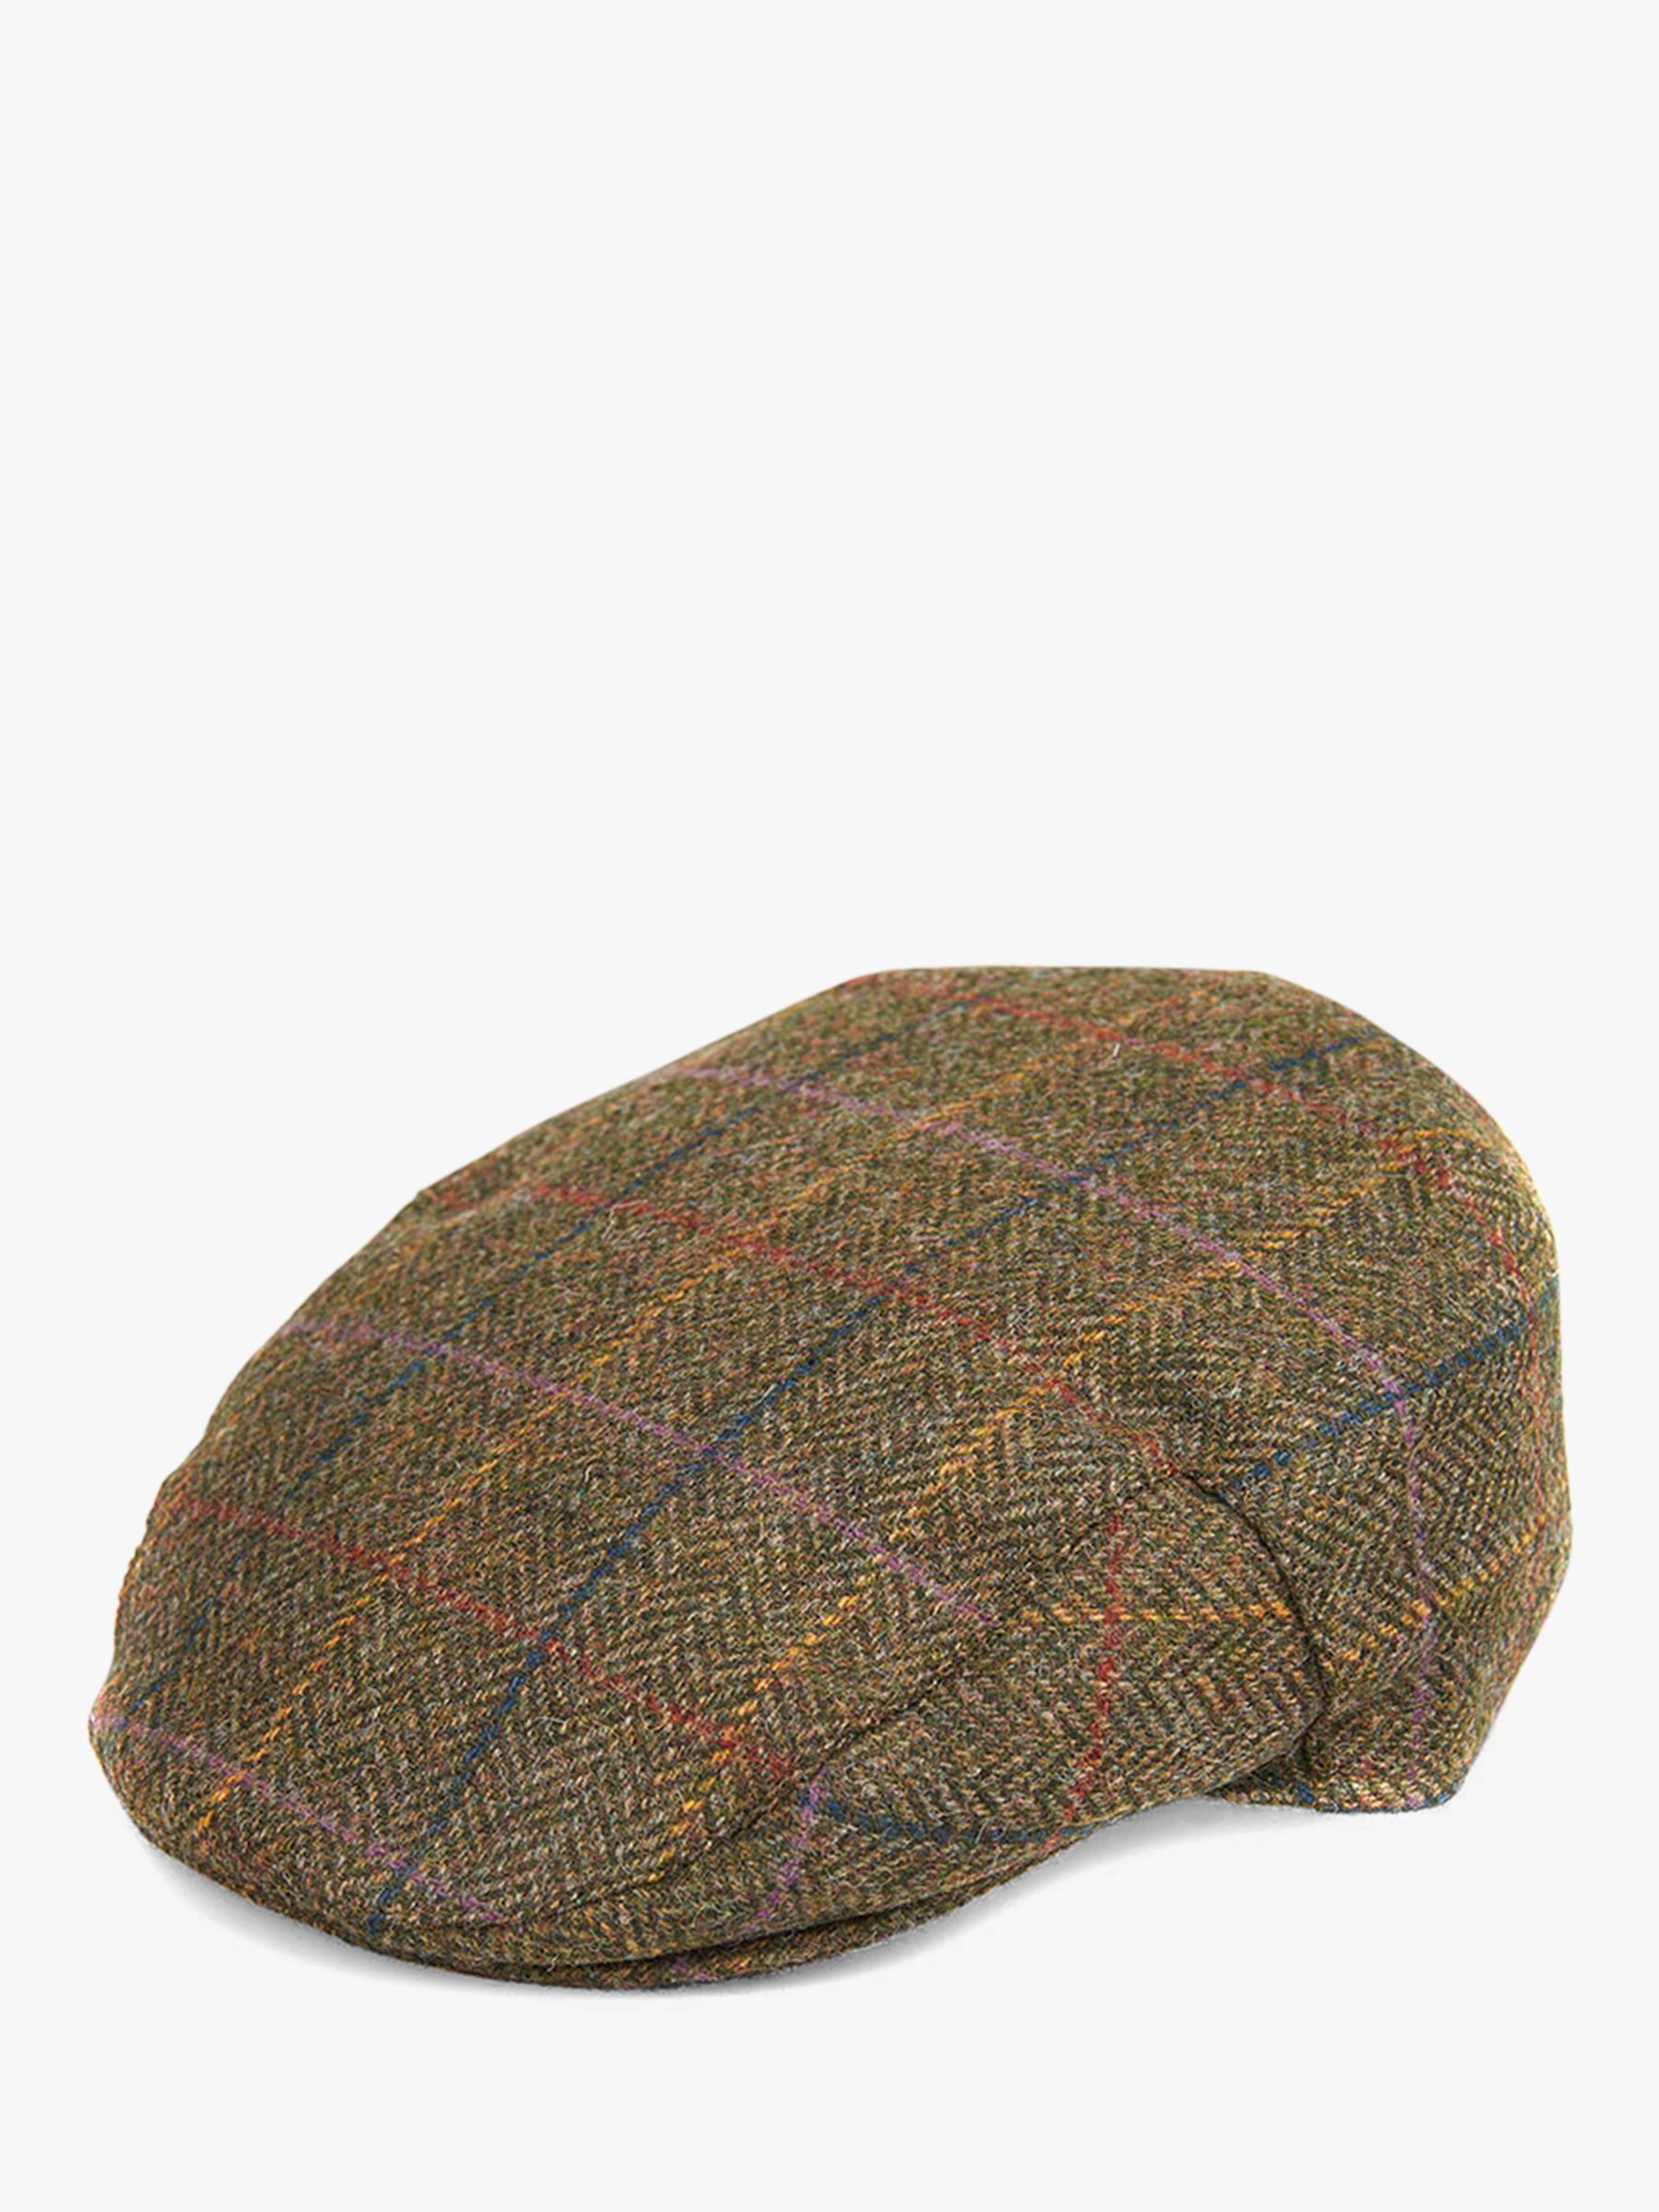 barbour tweed hat